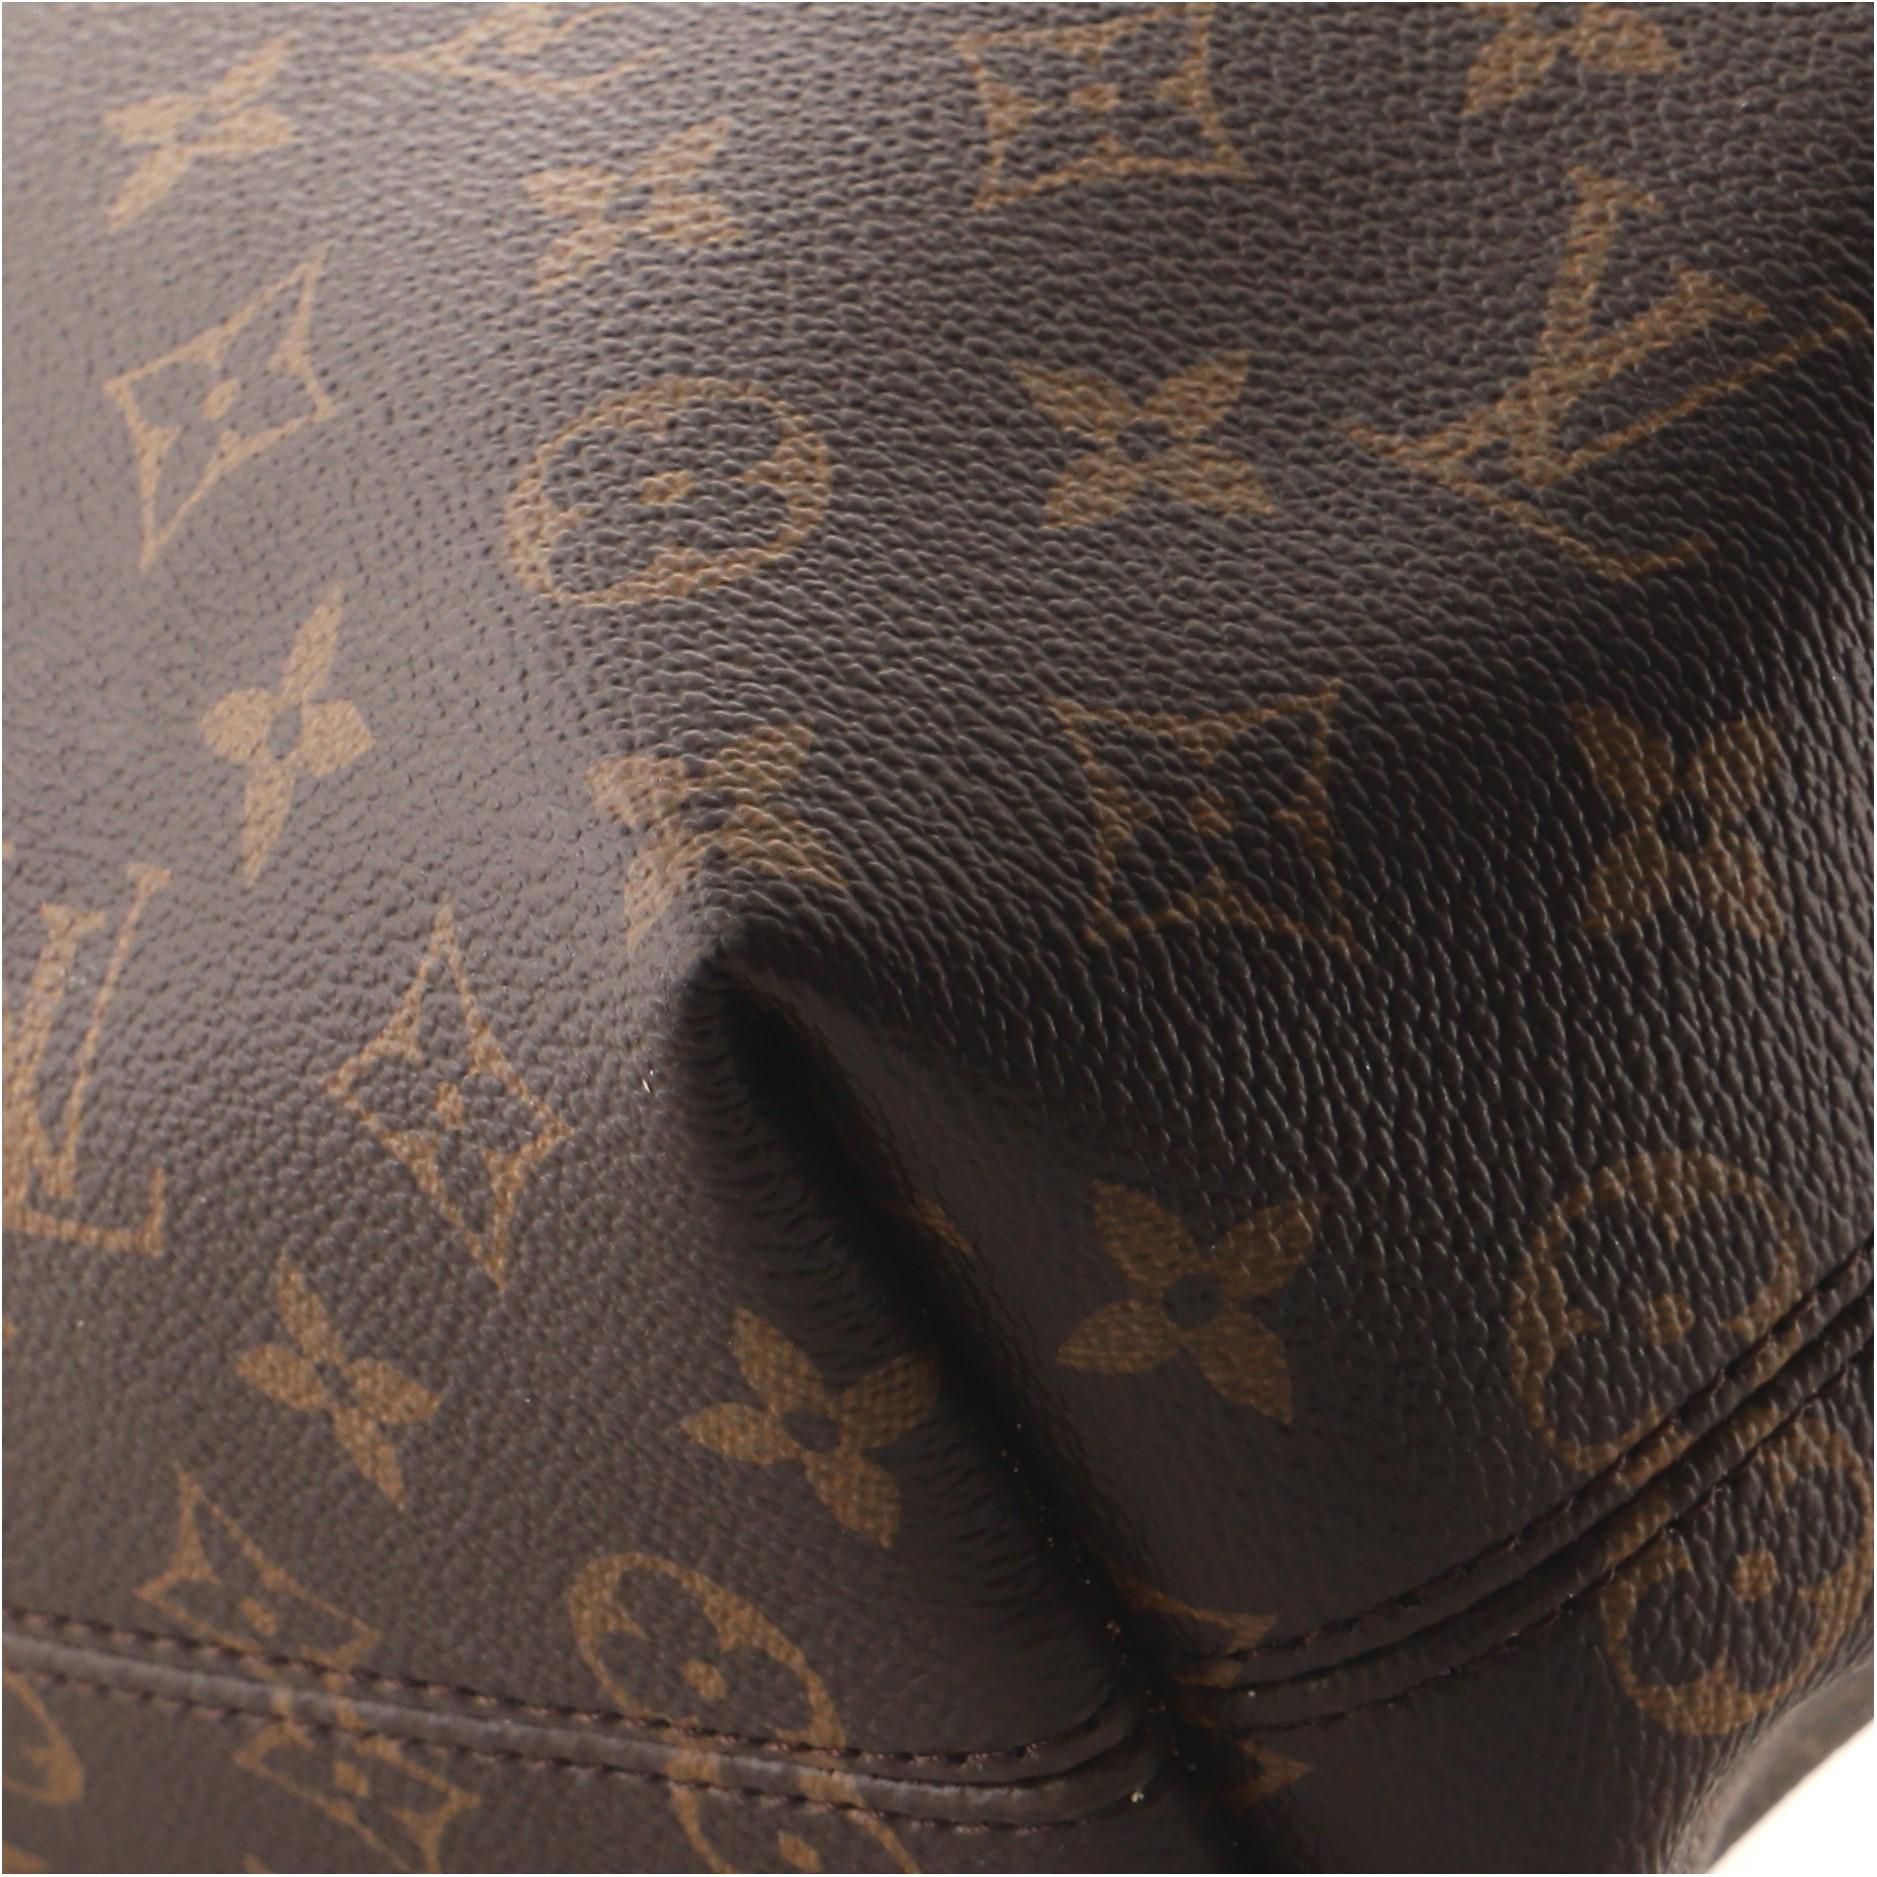 Louis Vuitton Graceful Handbag Monogram Canvas PM 3